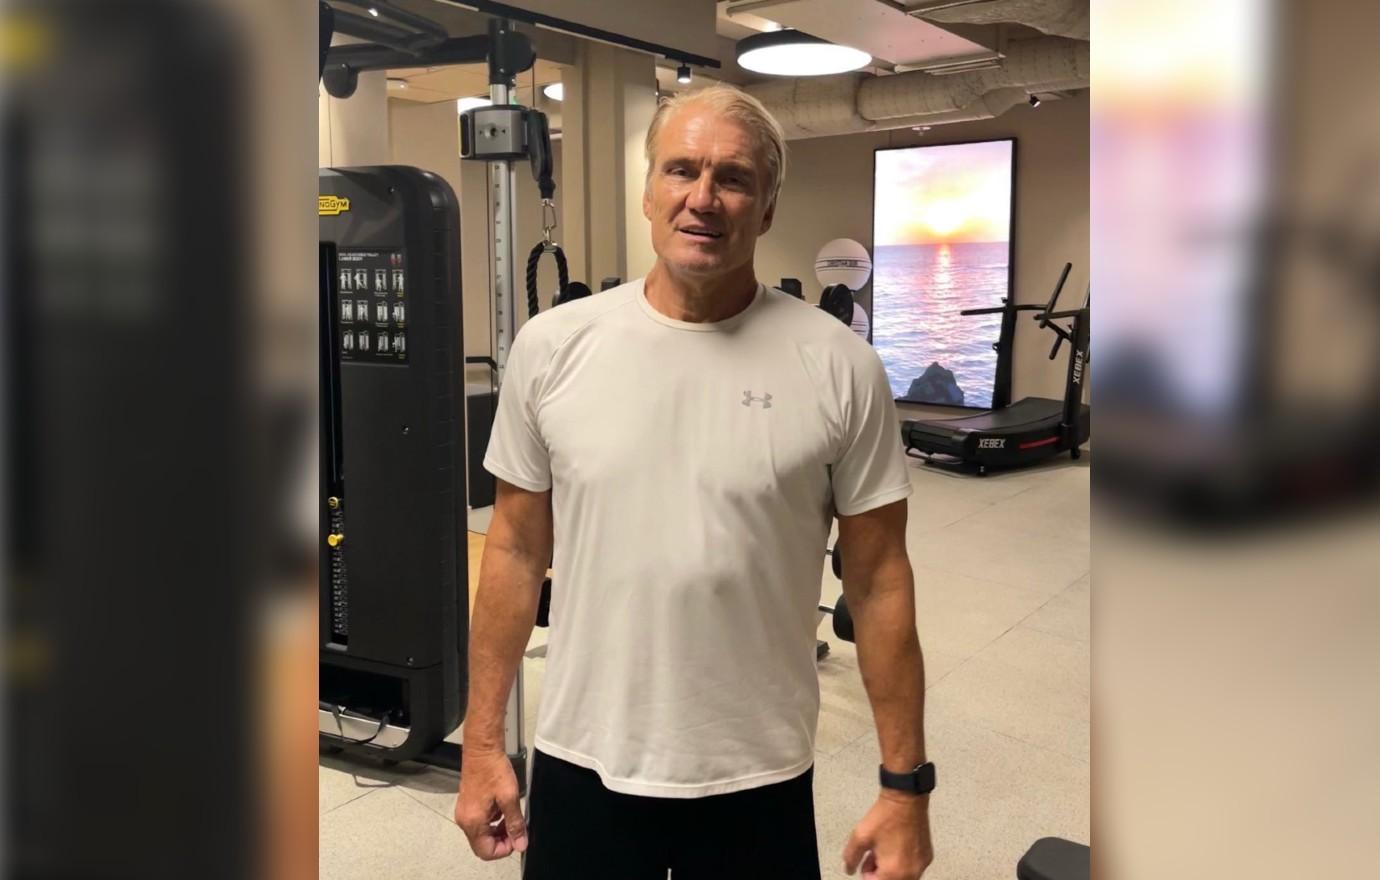 Cancer-Stricken Dolph Lundgren Shows Off Physique At Gym